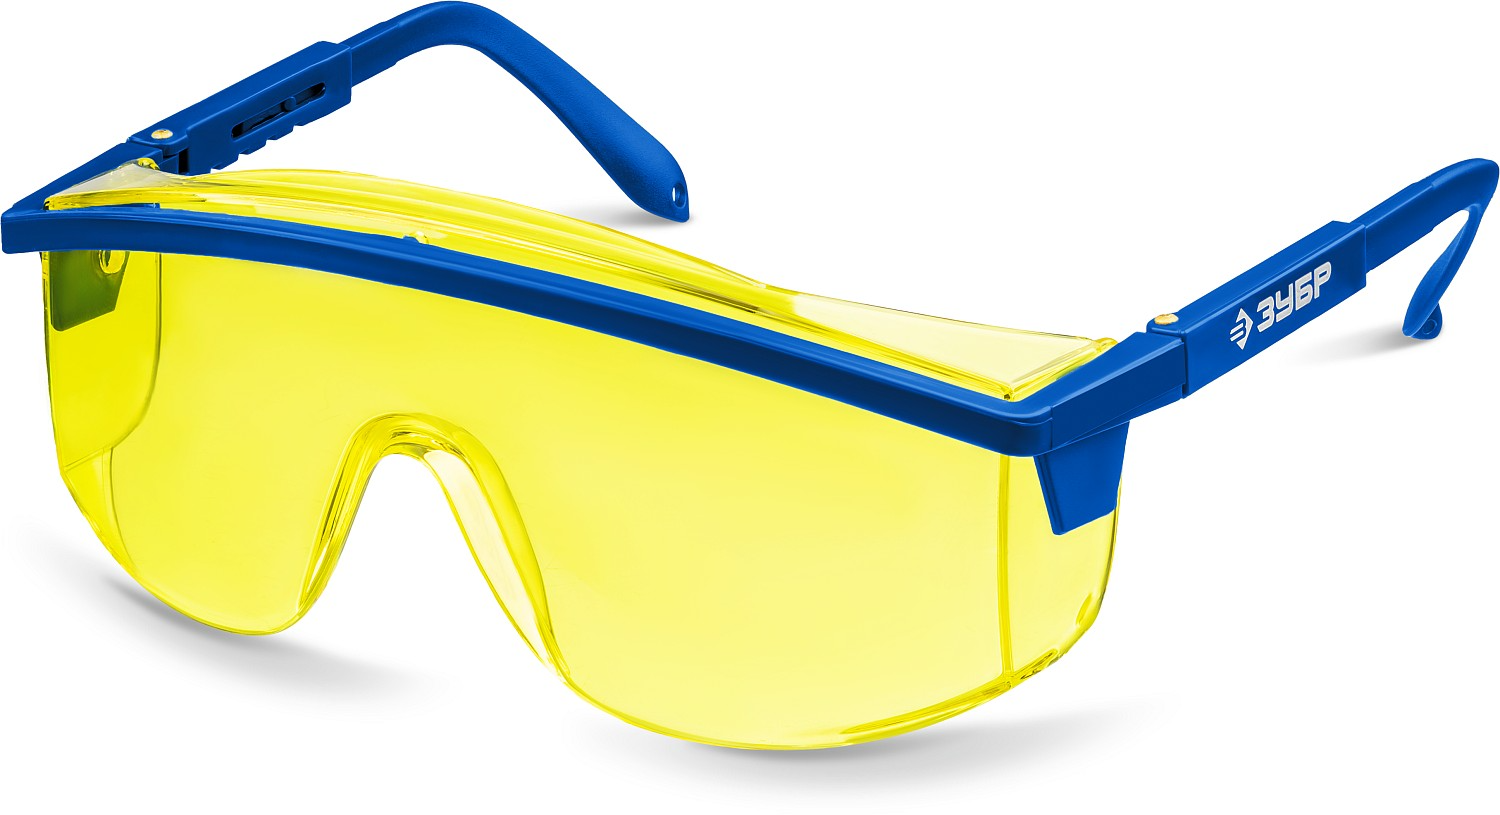 Защитные жёлтые очки ПРОТОН линза увеличенного размера, открытого типа ЗУБР 